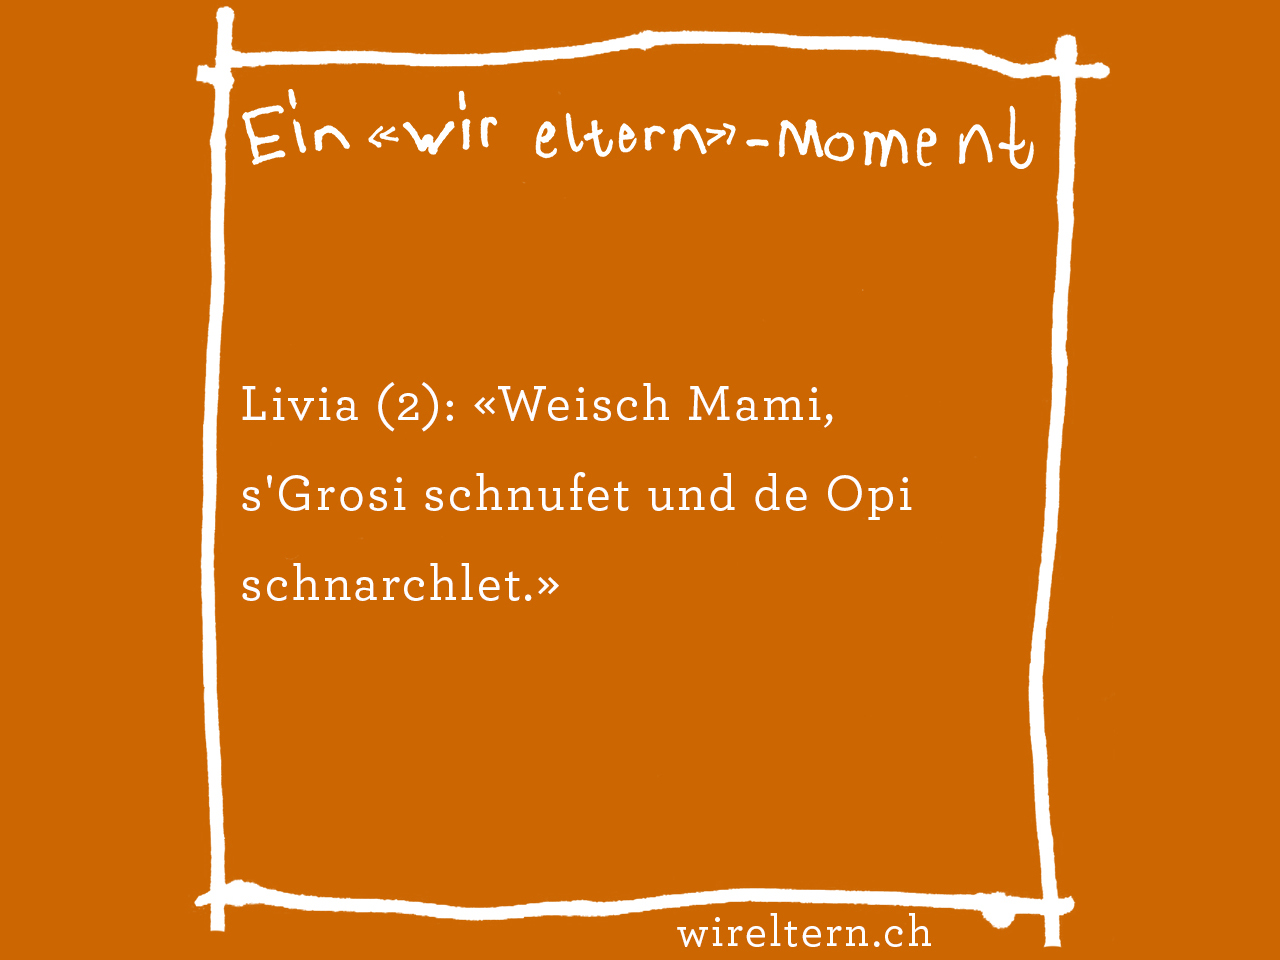 Livia (2): «Weisch Mami, s'Grosi schnufet und de Opi schnarchlet.»